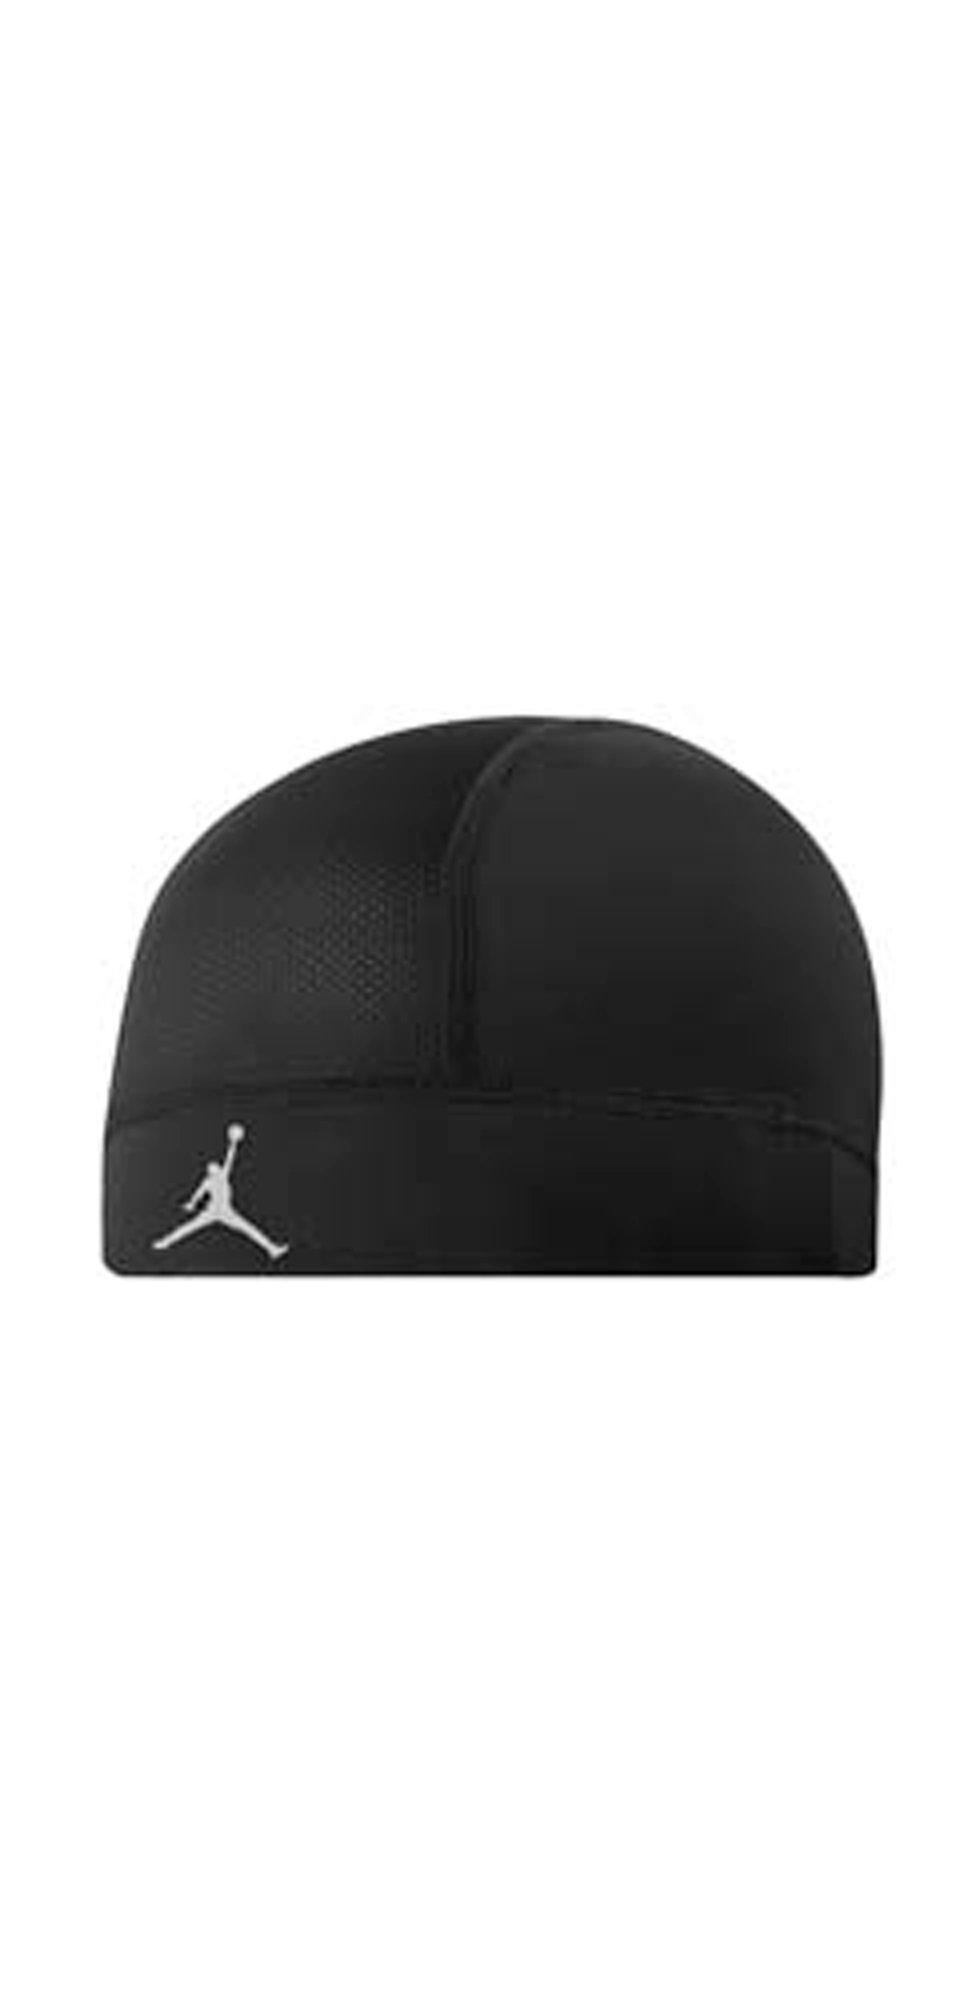 Jordan Football Skull Cap - Black/White